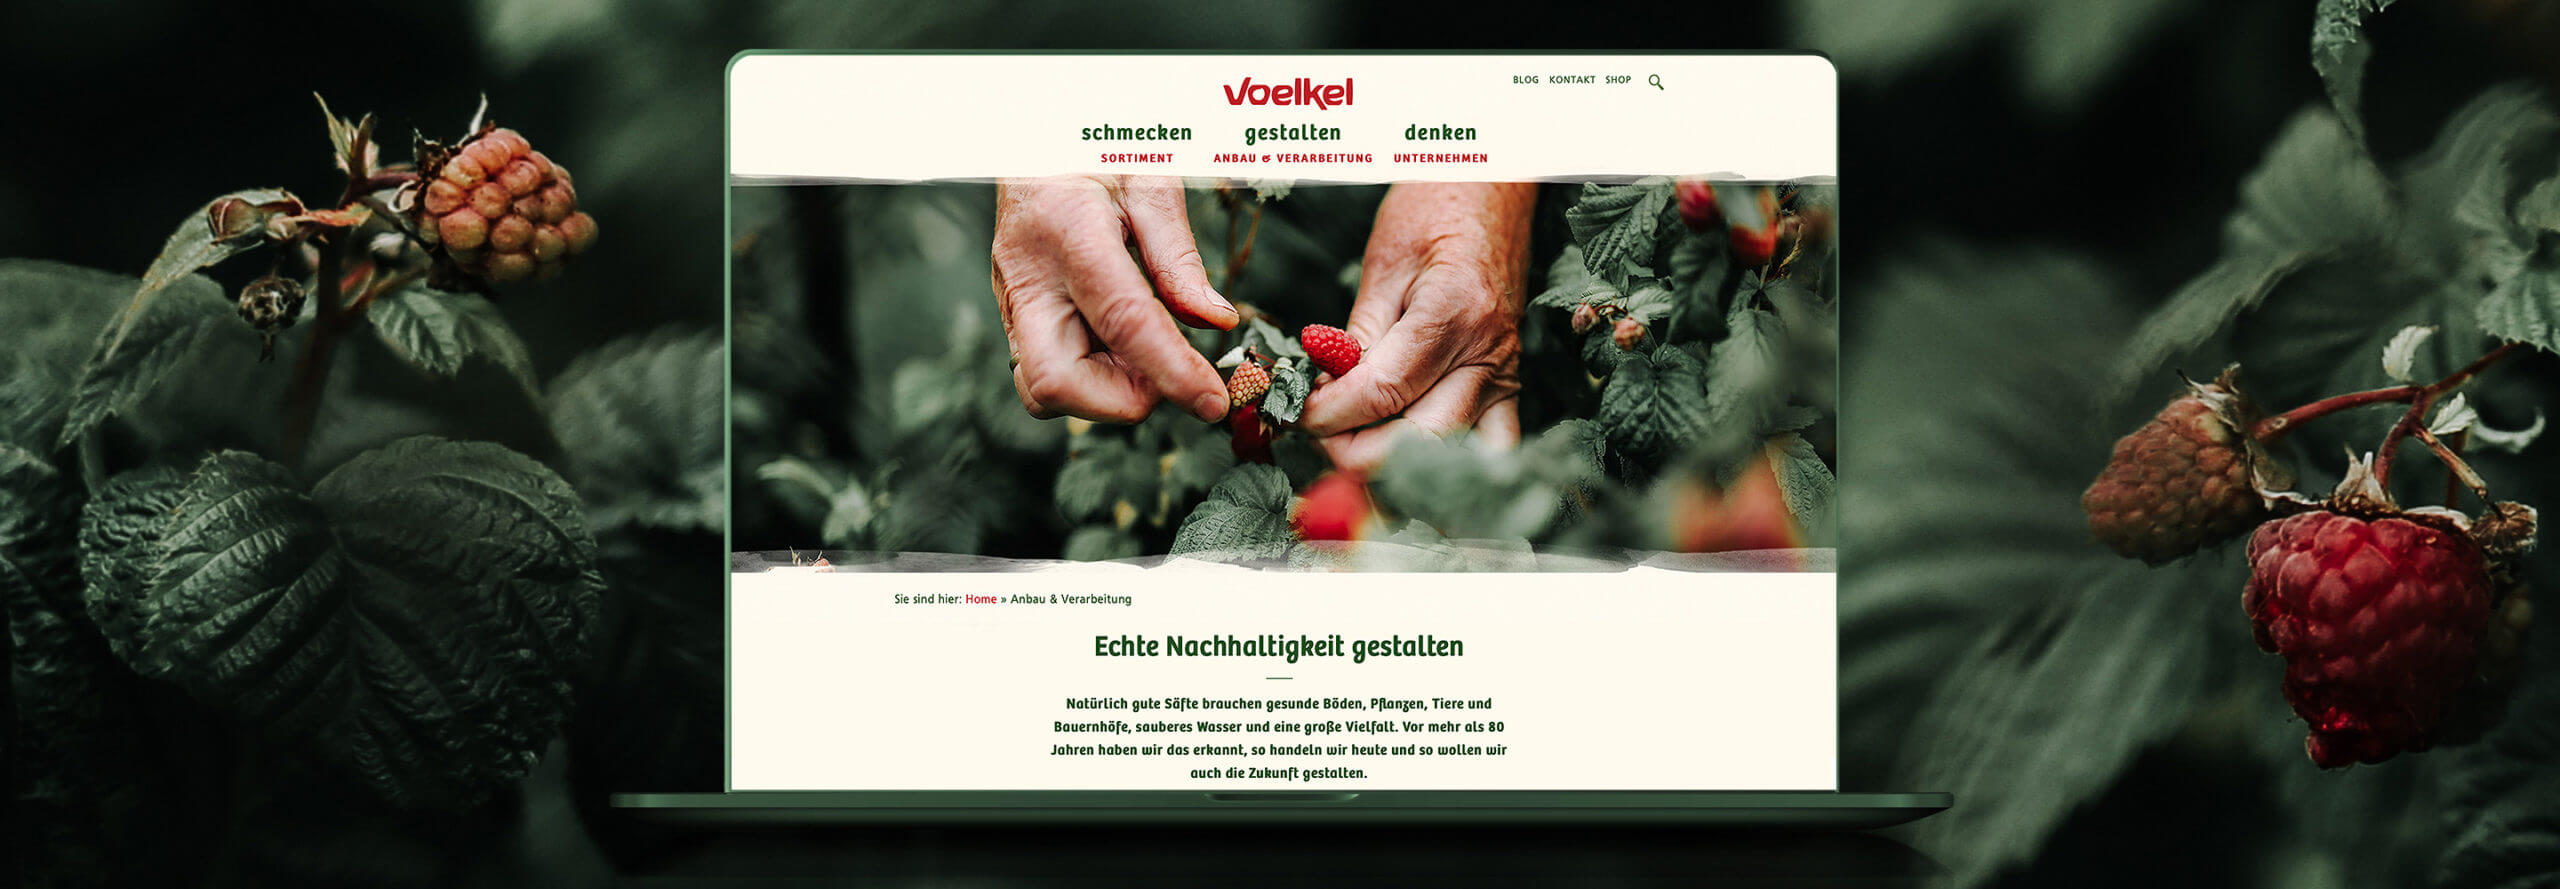 Voelkel_Naturkostsaefte_Website